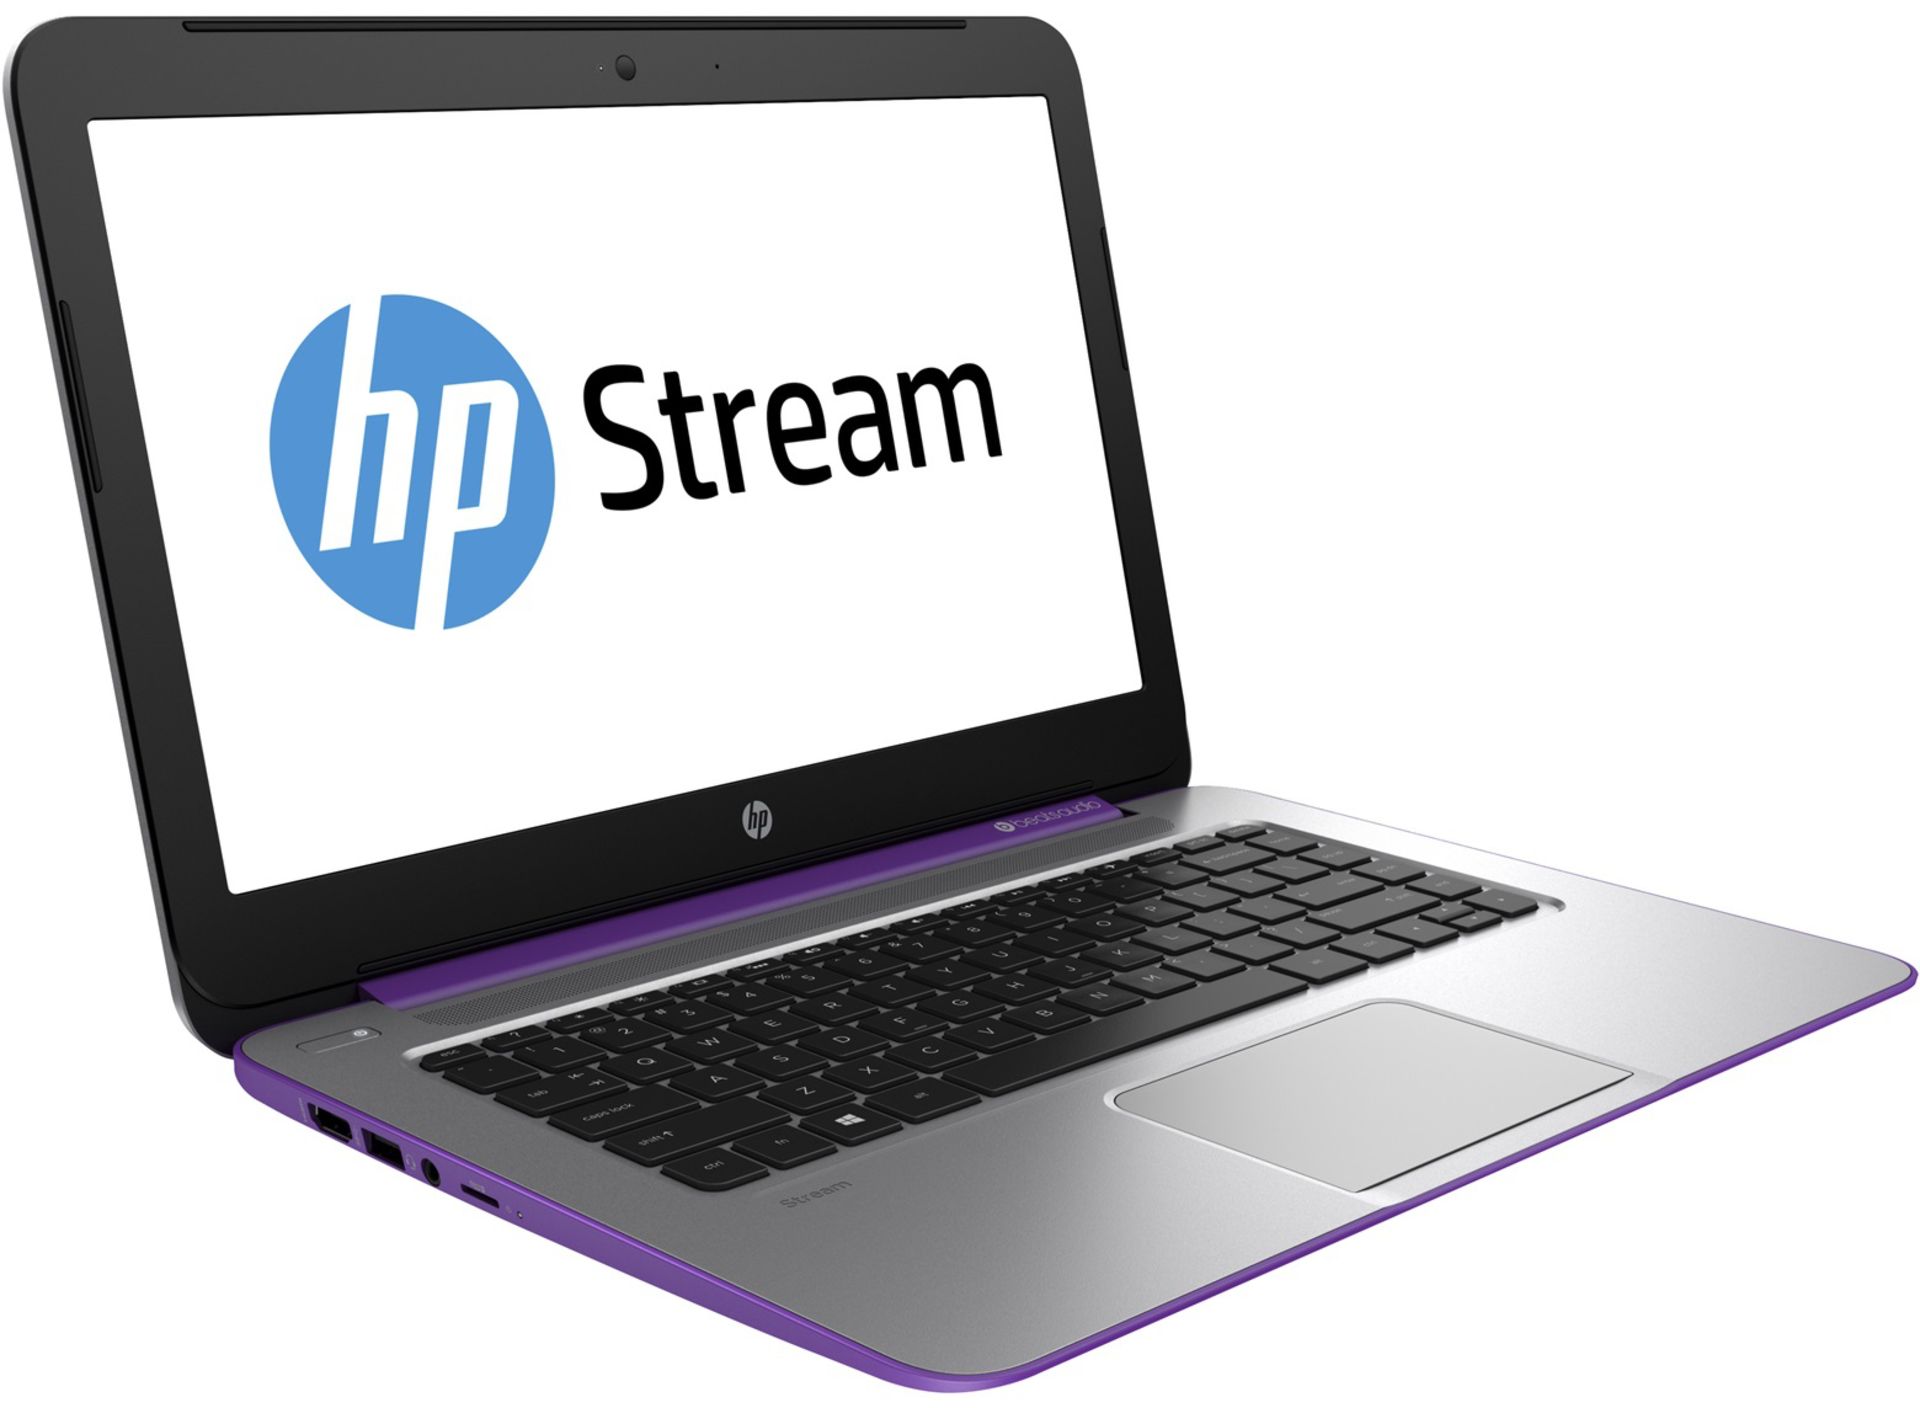 V Grade A HP Stream 14 - Intel Celeron N3050 - 2Gb Ram - 32Gb Storage - DTS+ Sound - Bluetooth -